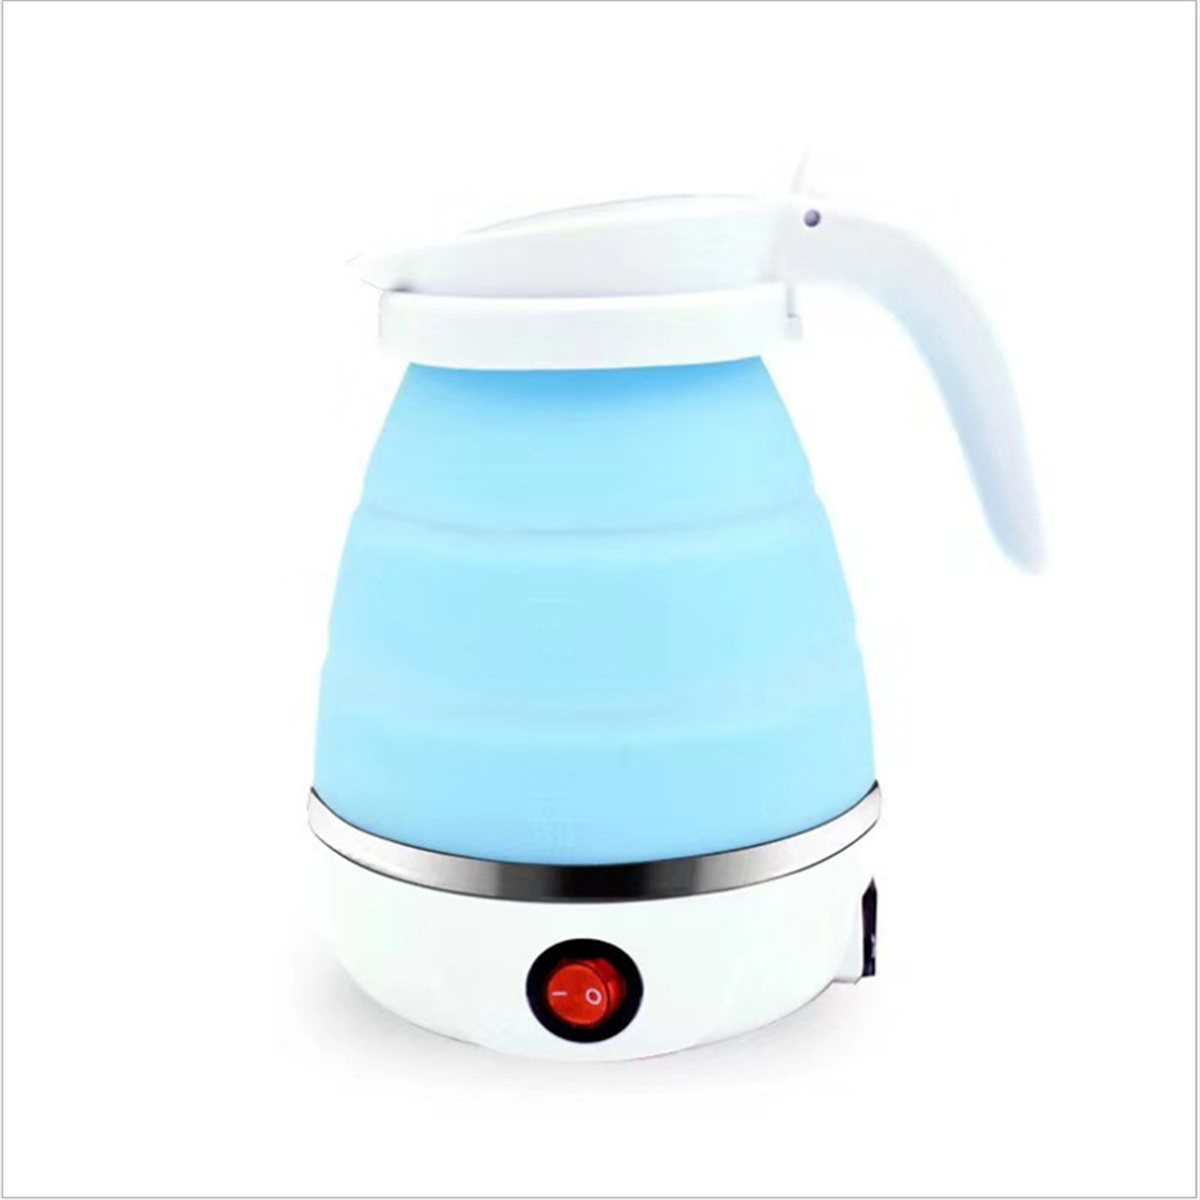 Wasserkocher Weiß Elektrischer Zusammenklappbarer Edelstahl Wasserkocher Weiß 304 FEI Mini-Wasserkocher Wasserkocher,